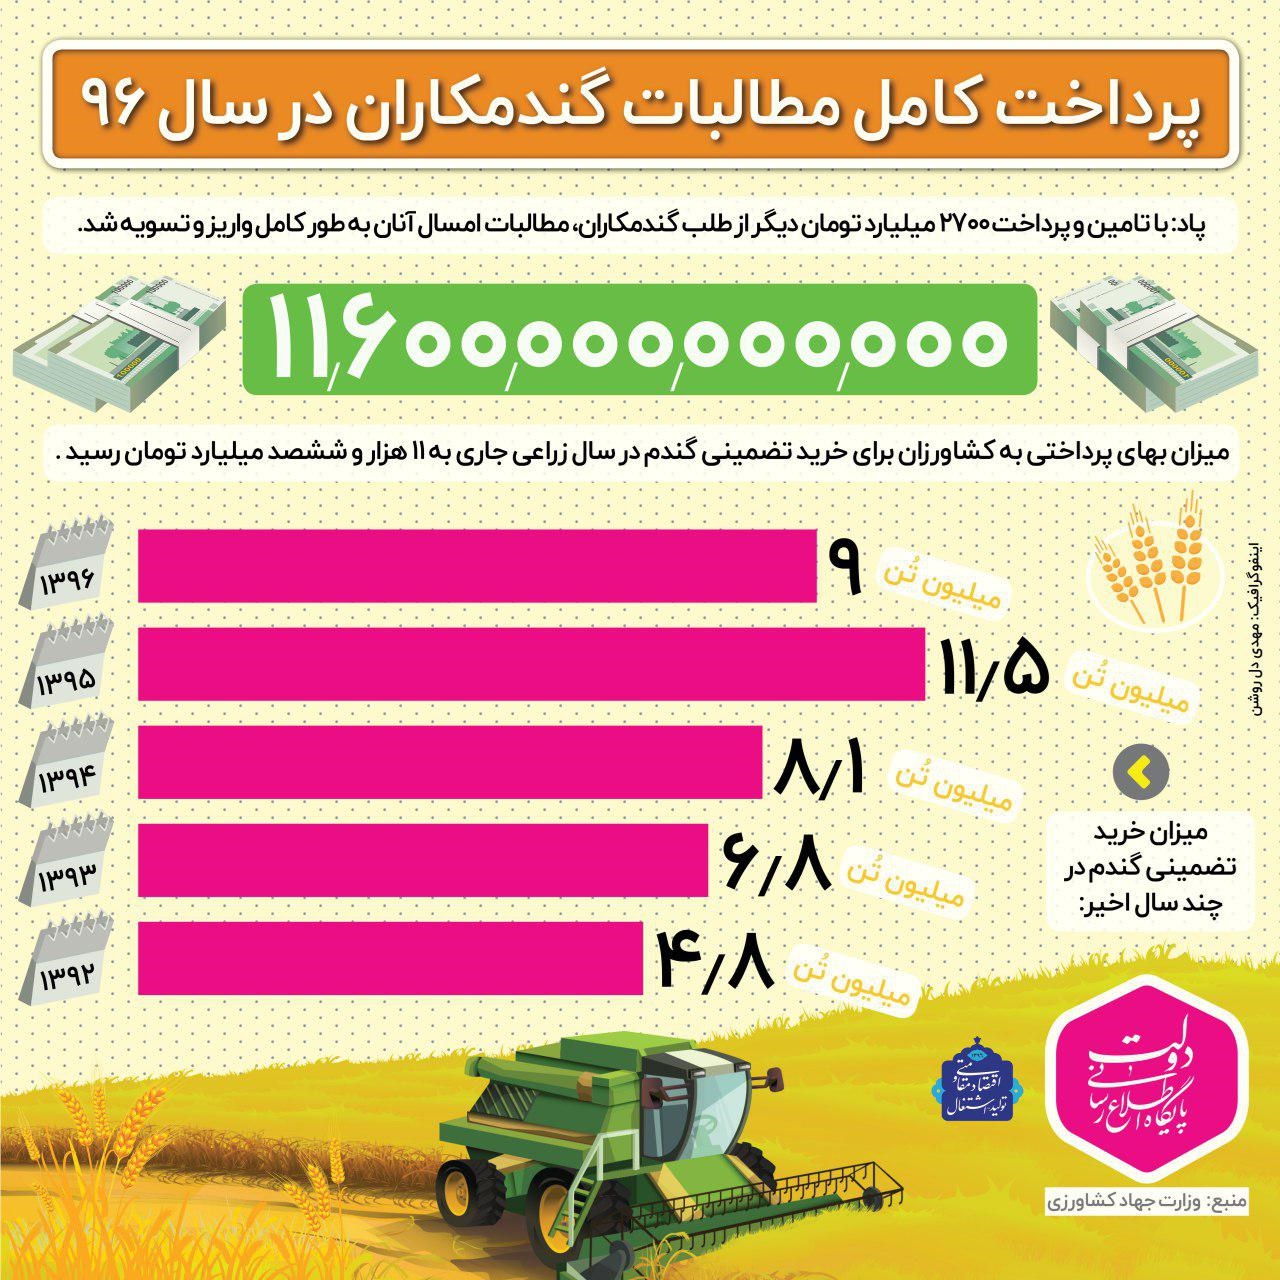 اینفوگرافیک | میزان خرید گندم توسط دولت در پنج سال اخیر چقدر بوده؟